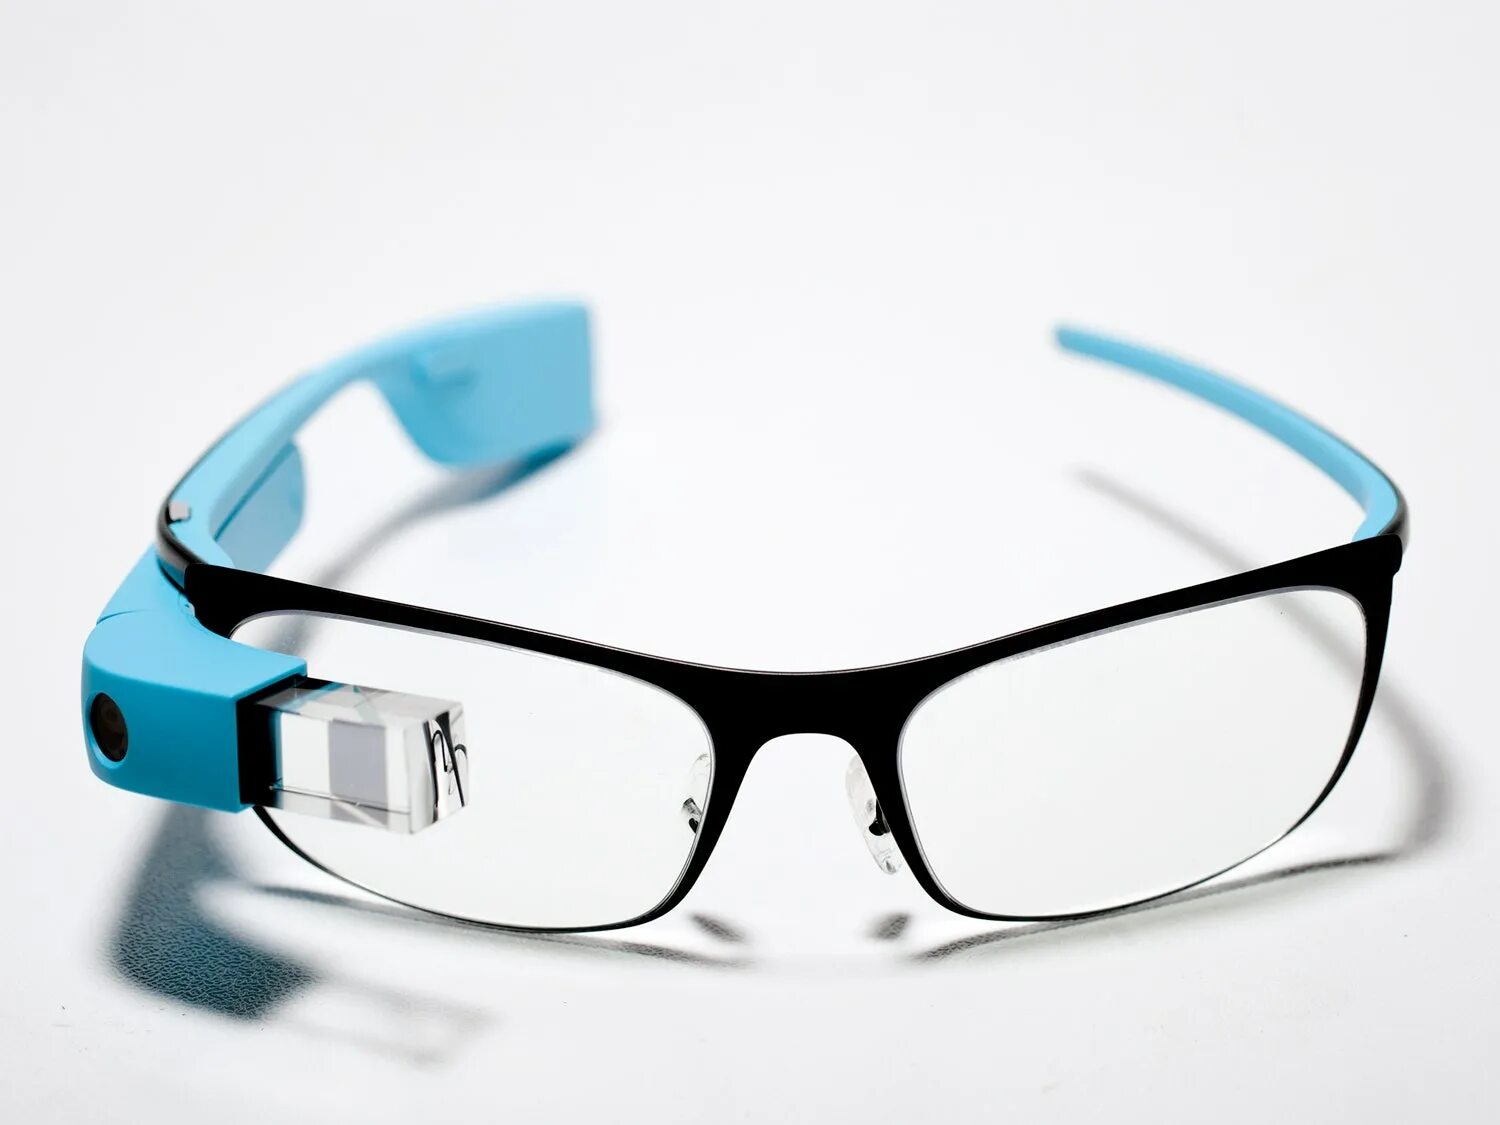 Смарт Гласс очки. Умные очки Google Glass. Ar-очки Google Glass 2014. Очки дополненной реальности Google Glass 3.0.